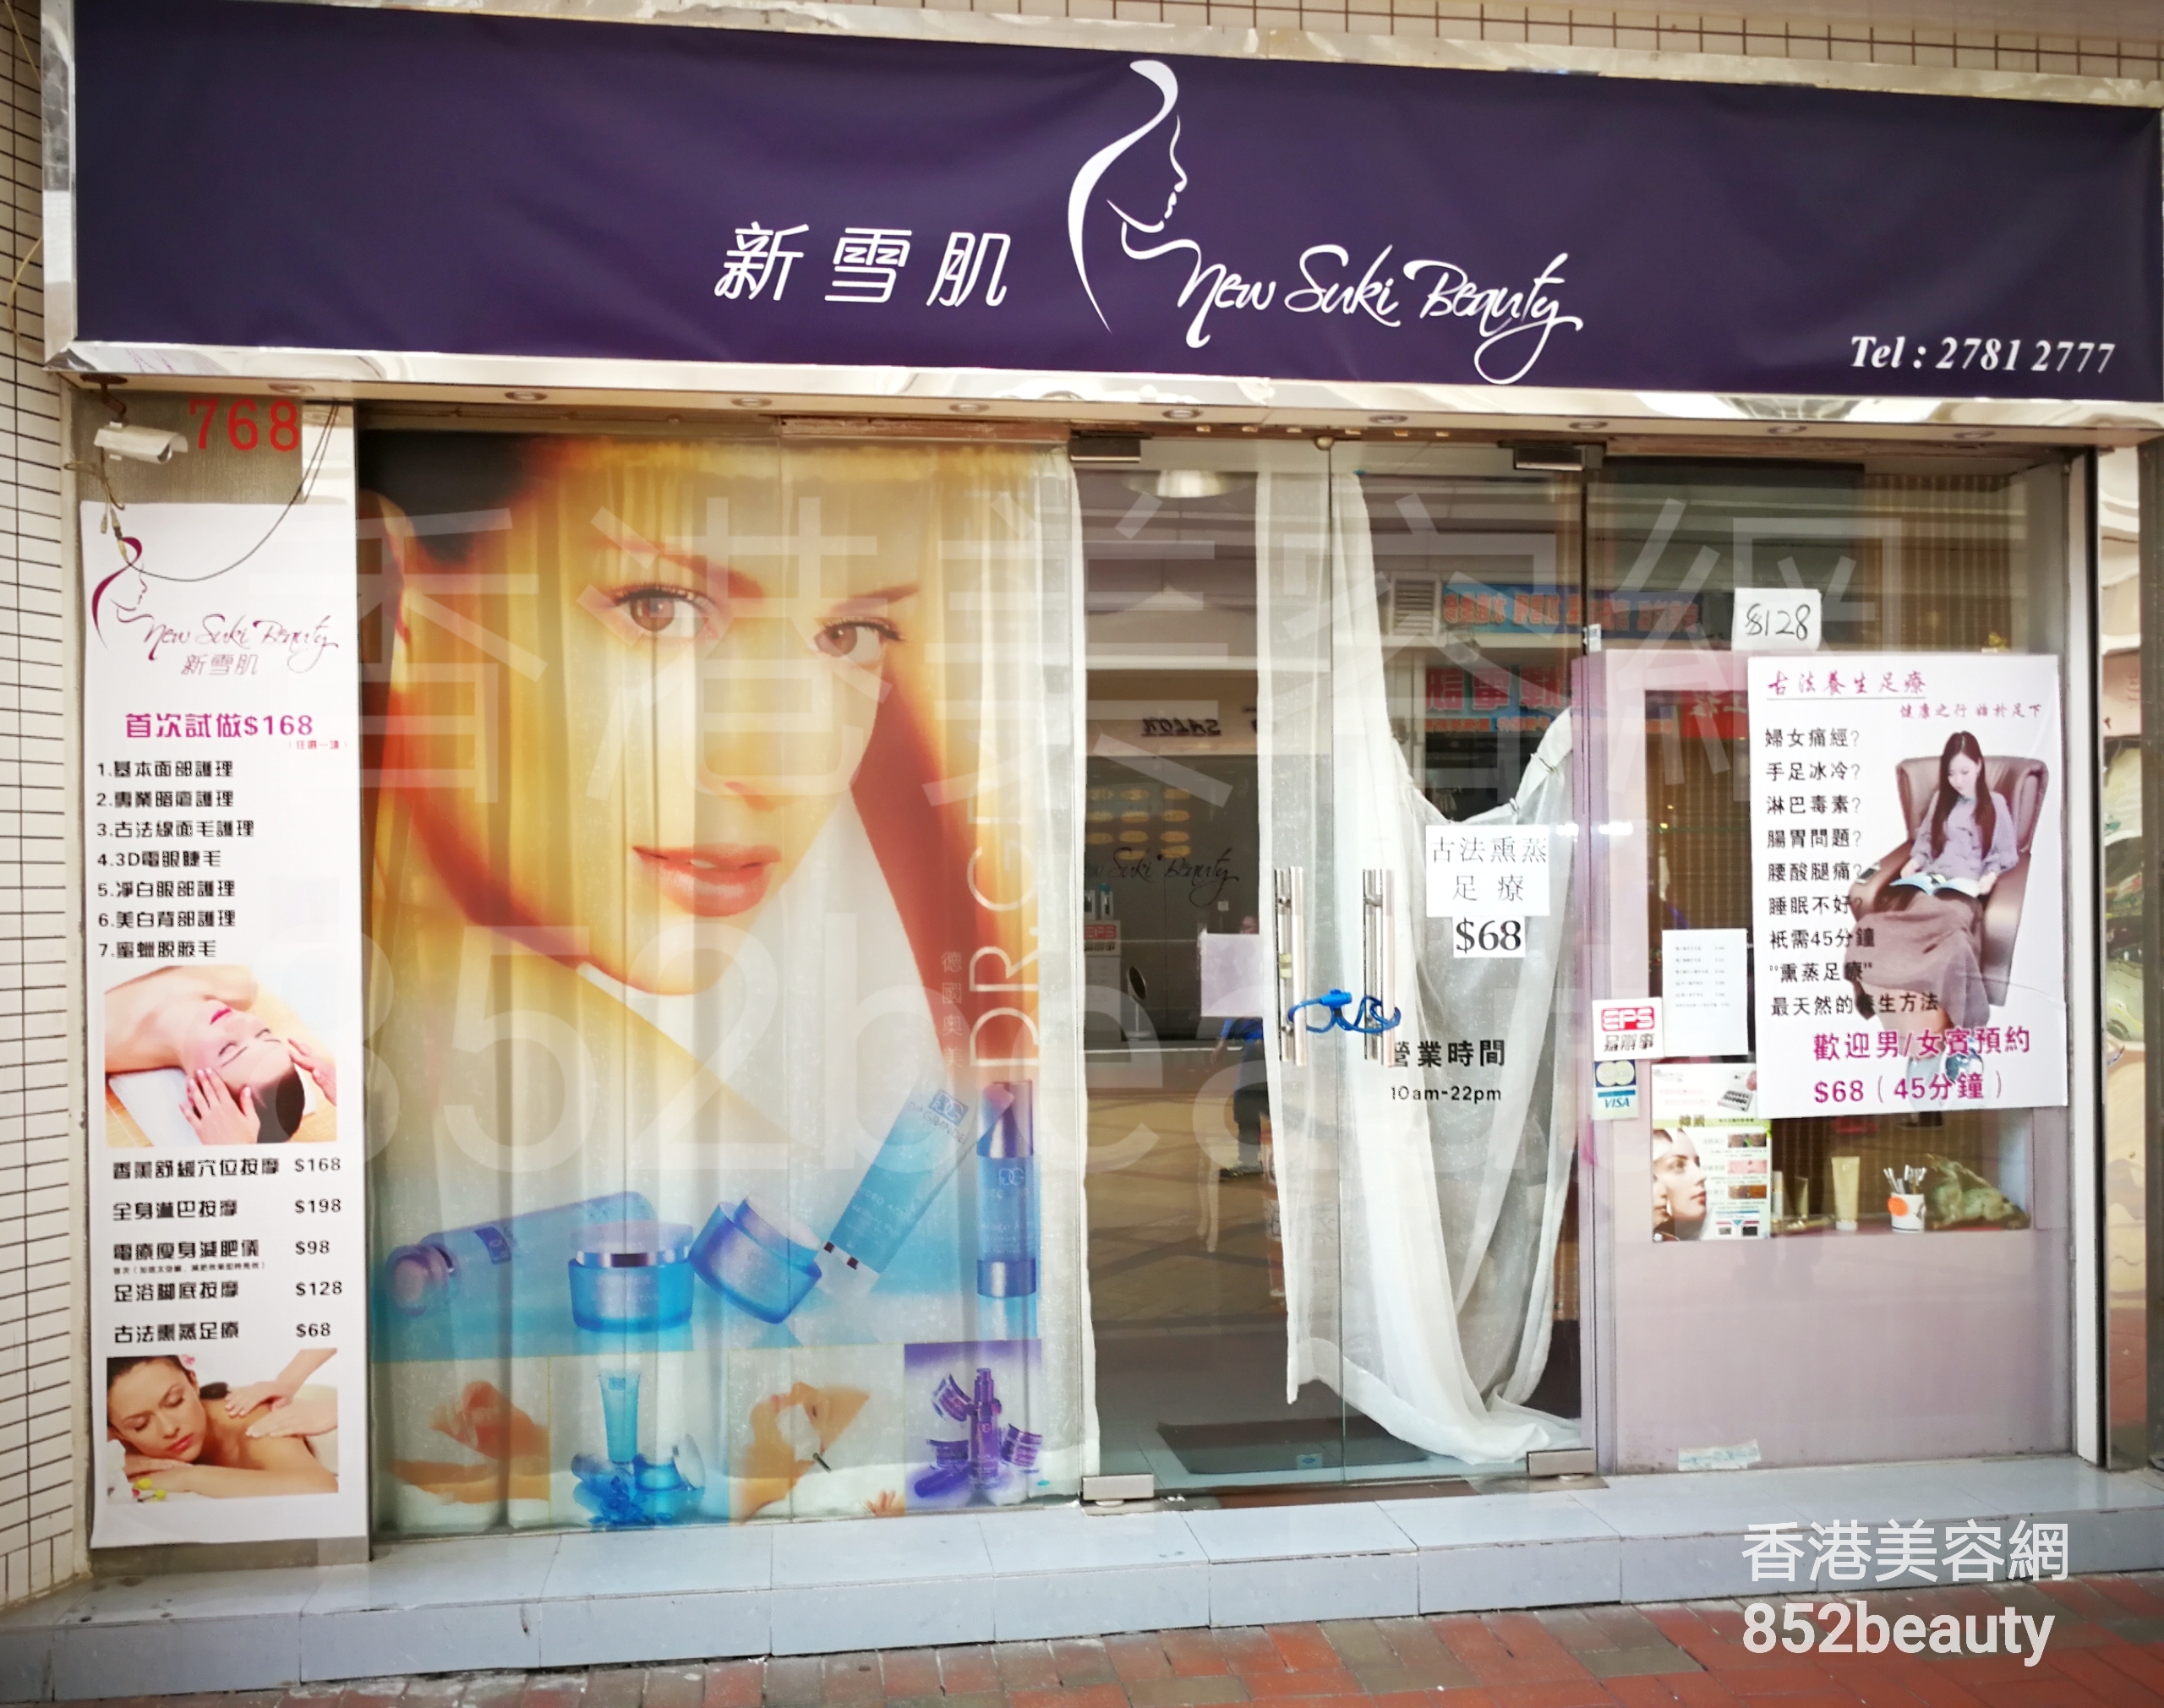 香港美容網 Hong Kong Beauty Salon 美容院 / 美容師: 新雪肌